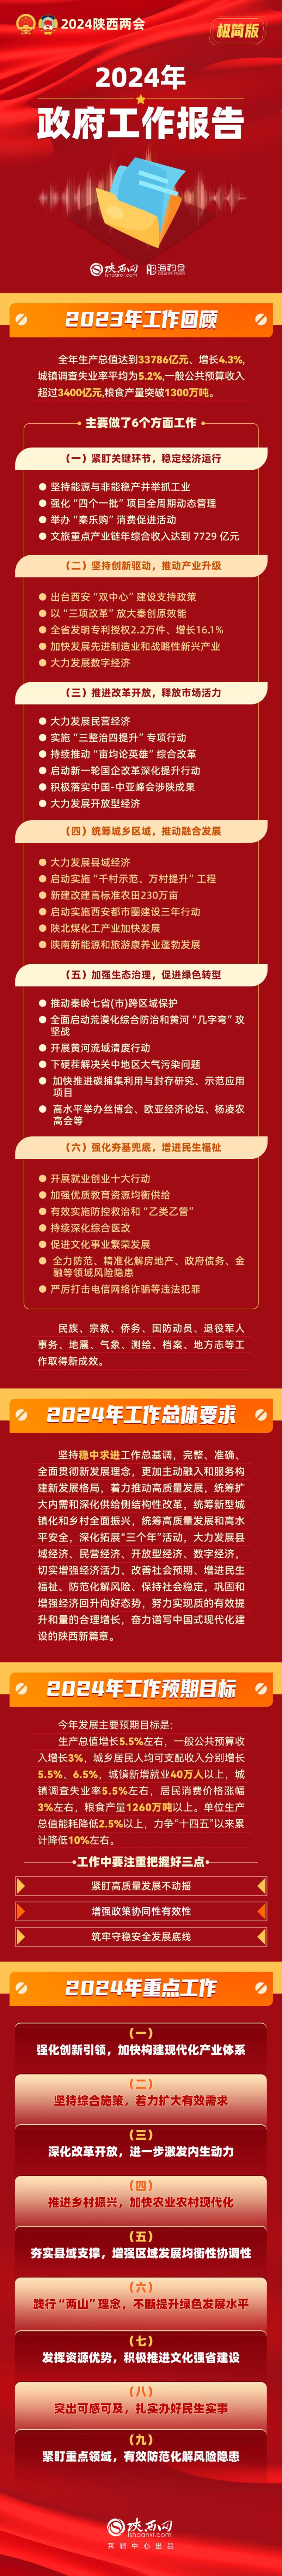 极简版一图读懂2024年陕西省政府工作报告